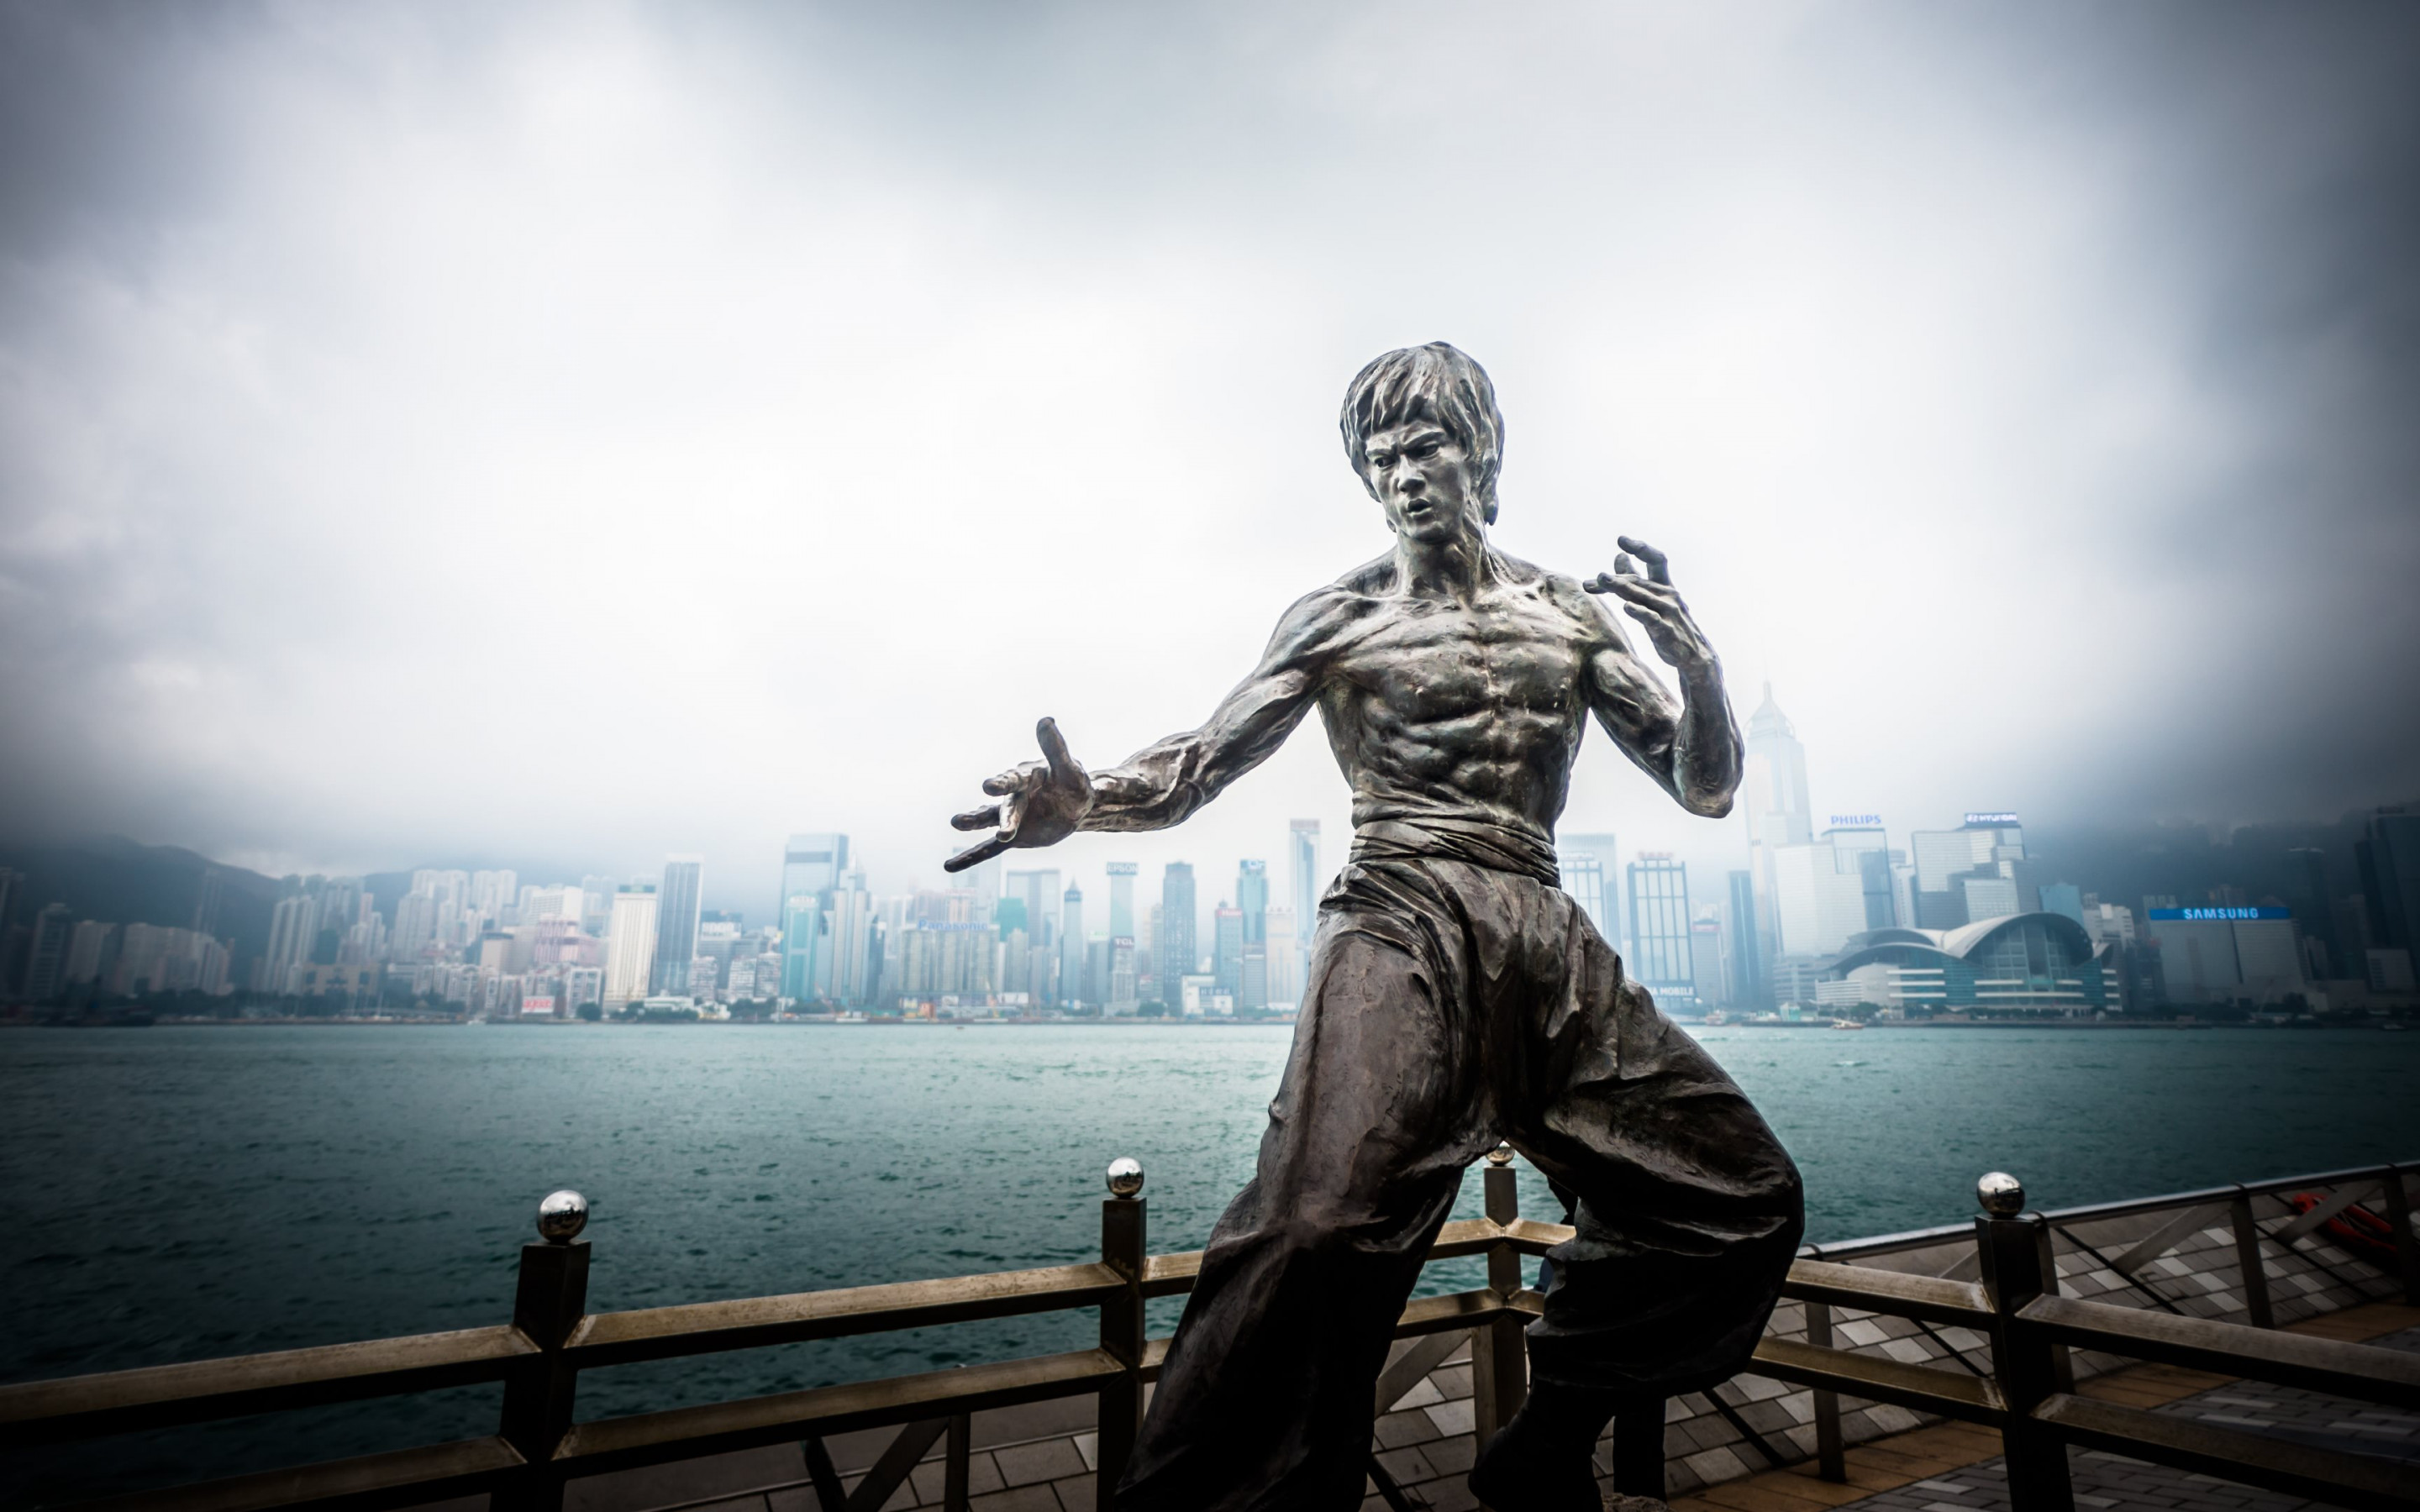 Bruce Lee statue from Hong Kong wallpaper 2880x1800